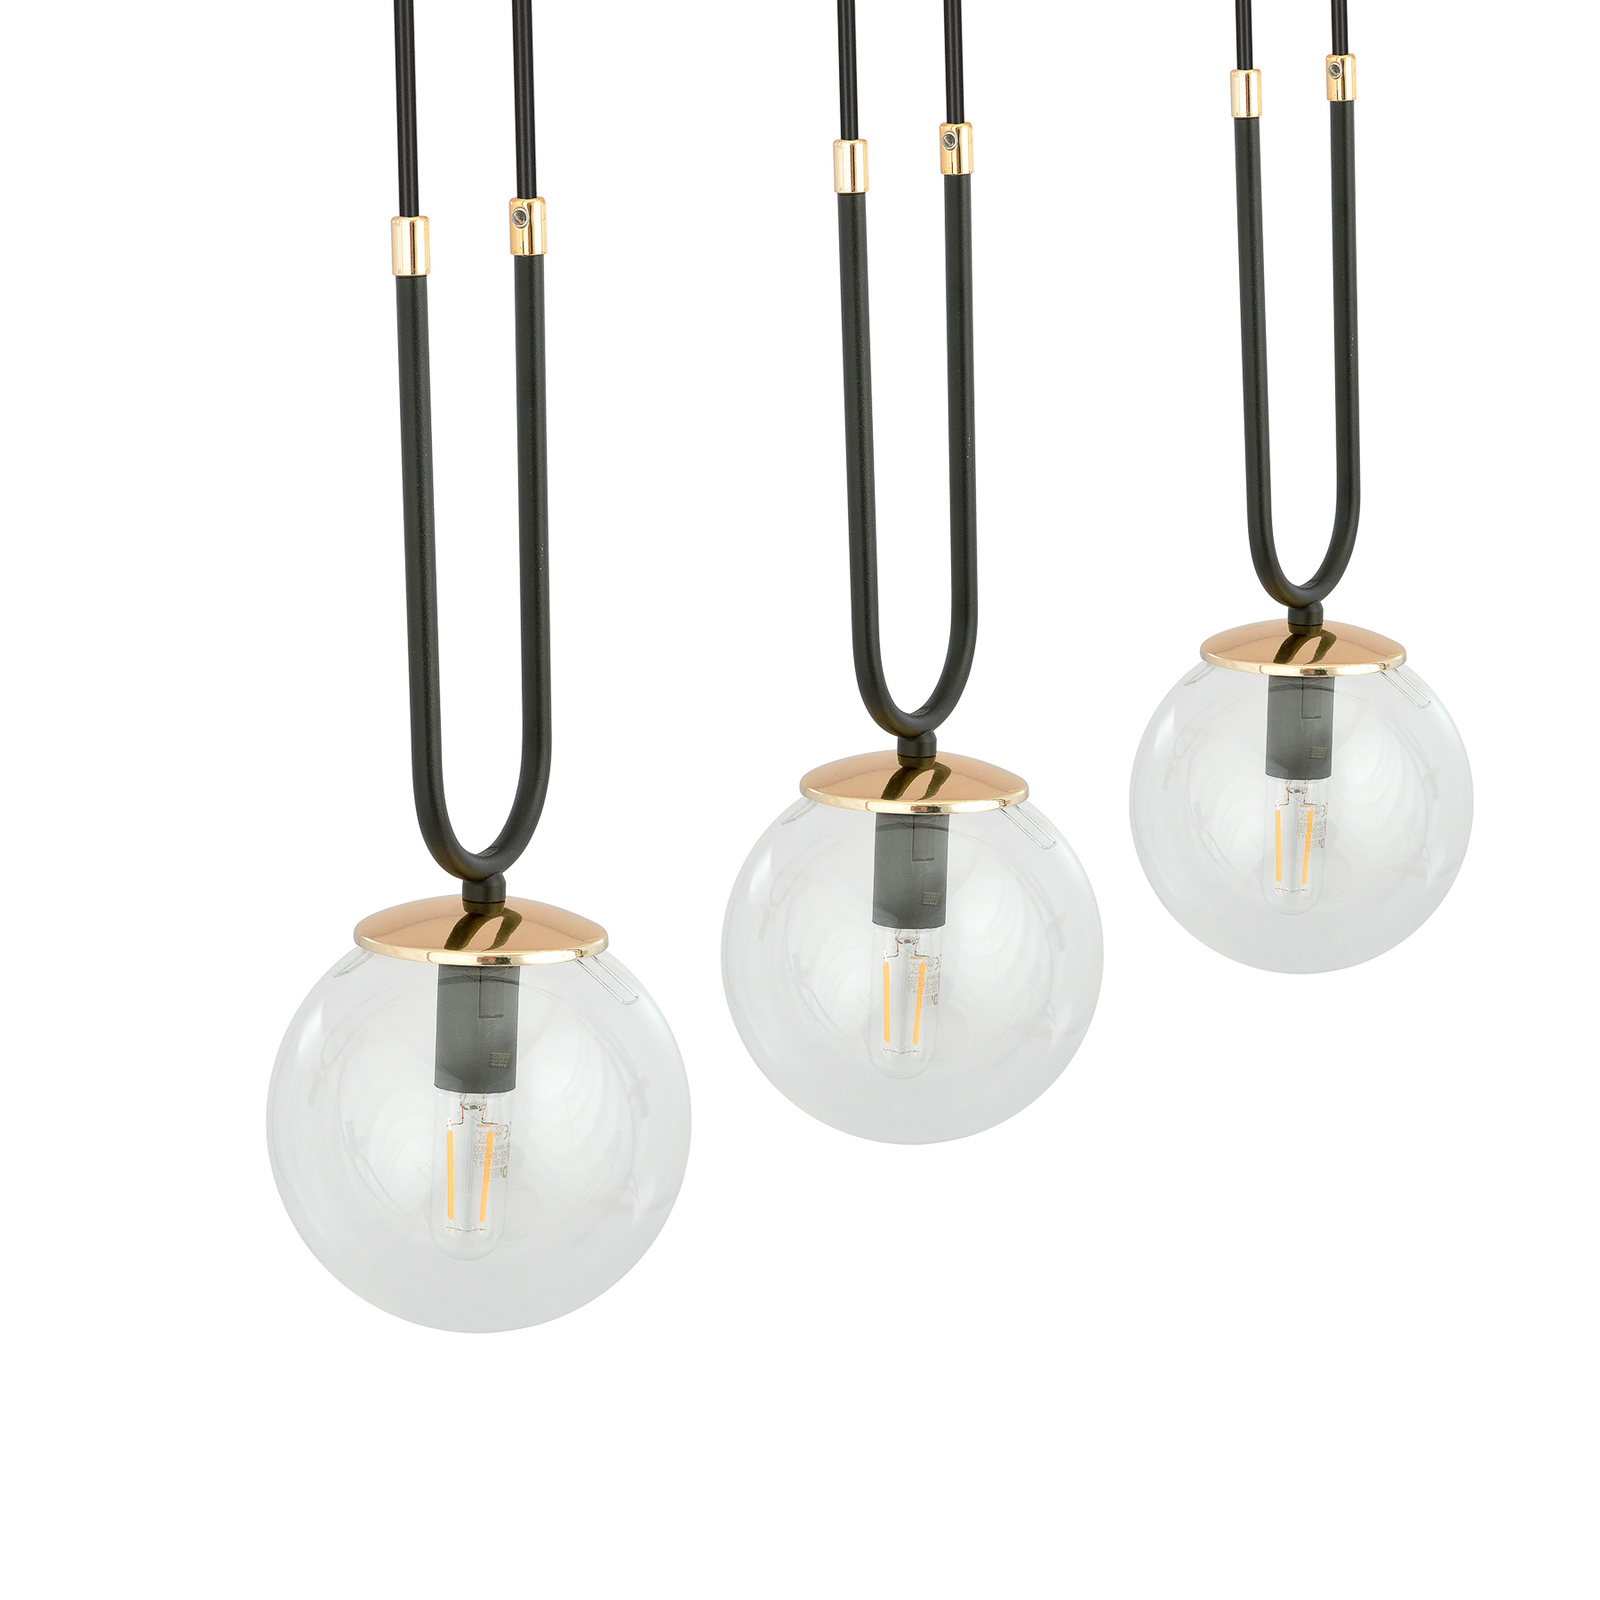 Hanglamp Glam, zwart/helder, 4-lamps